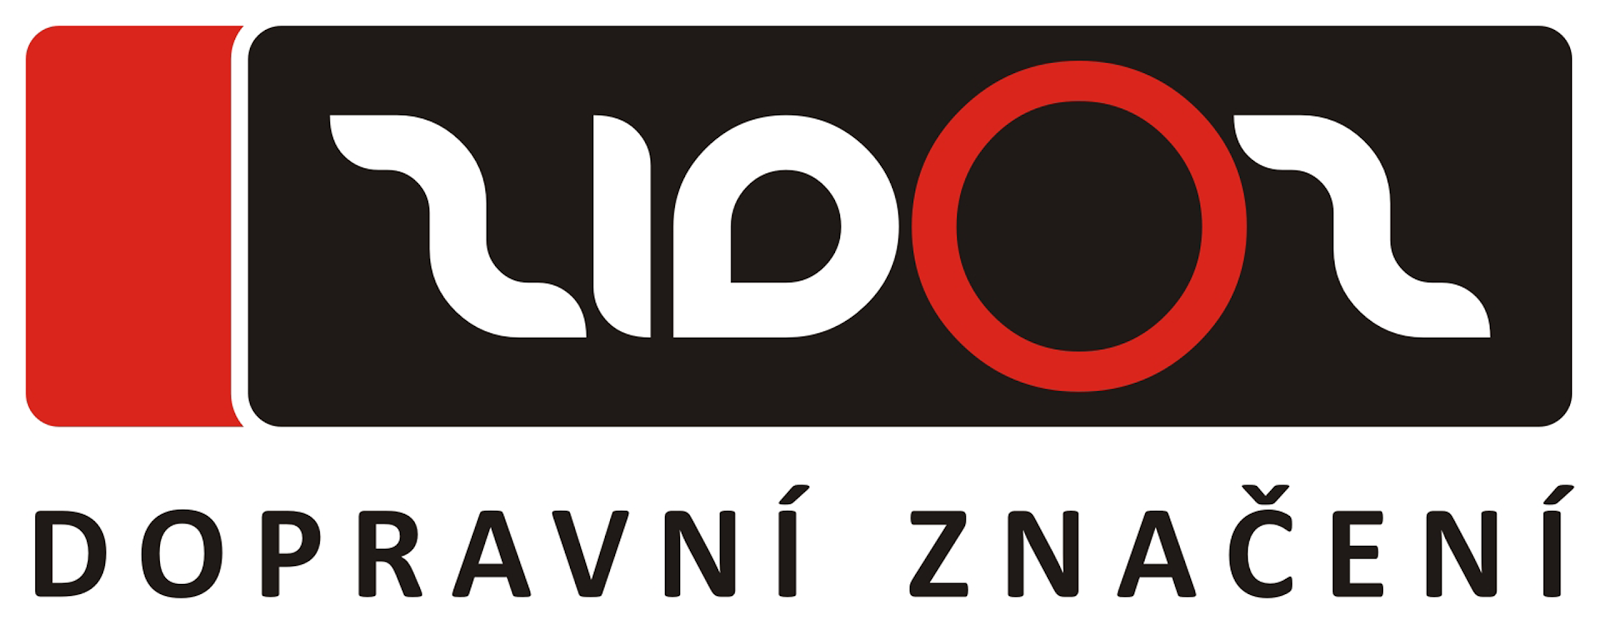 http://www.zidoz.cz/